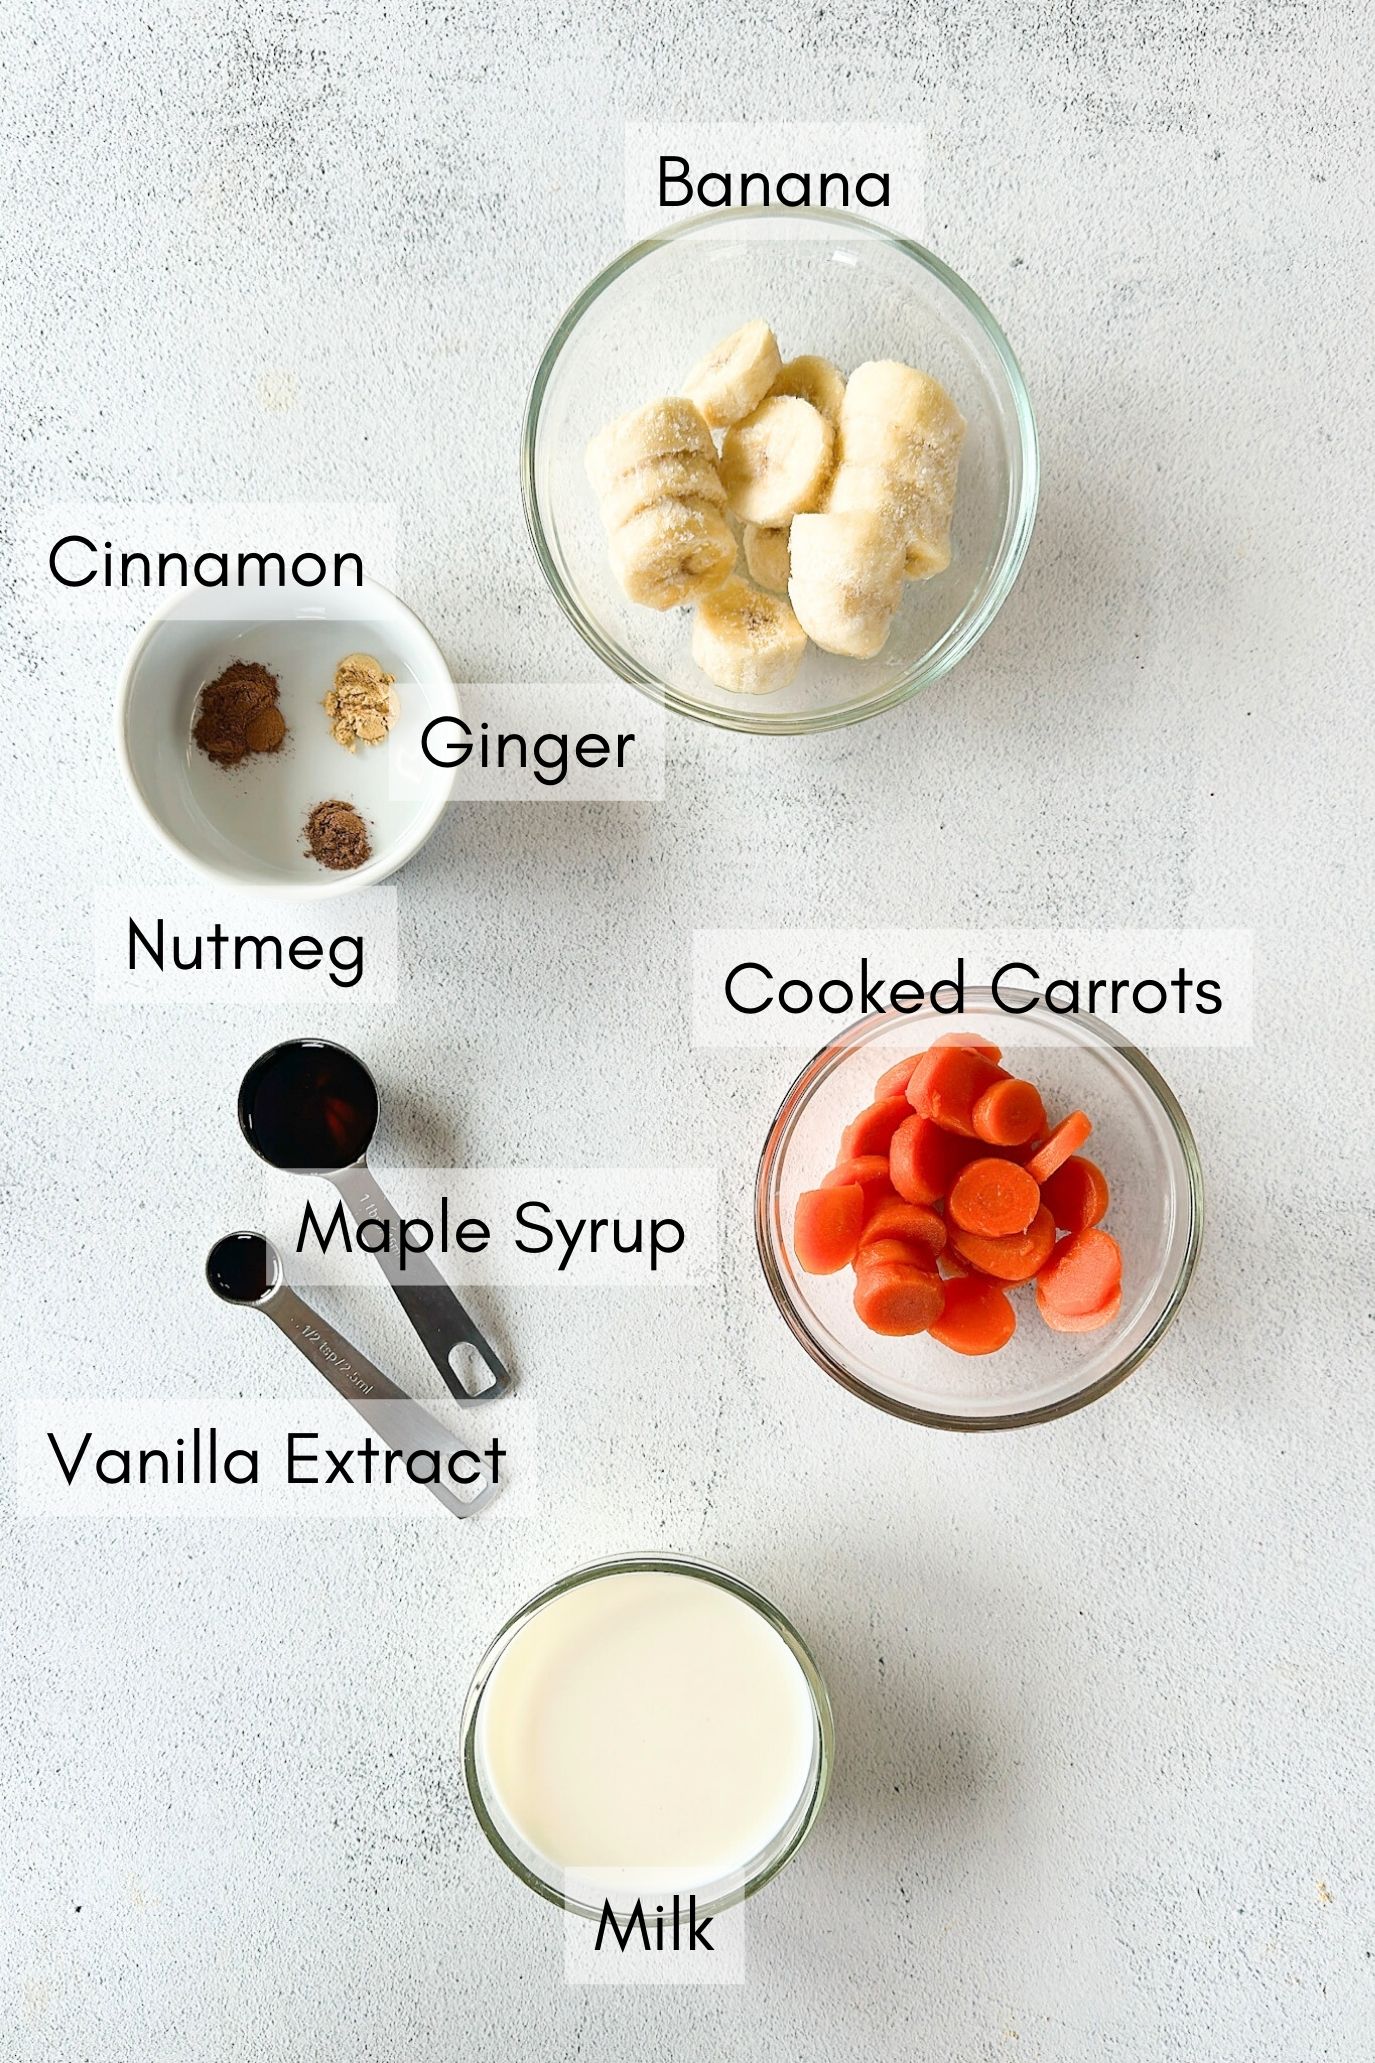 Ingredients to make carrot banana smoothie.